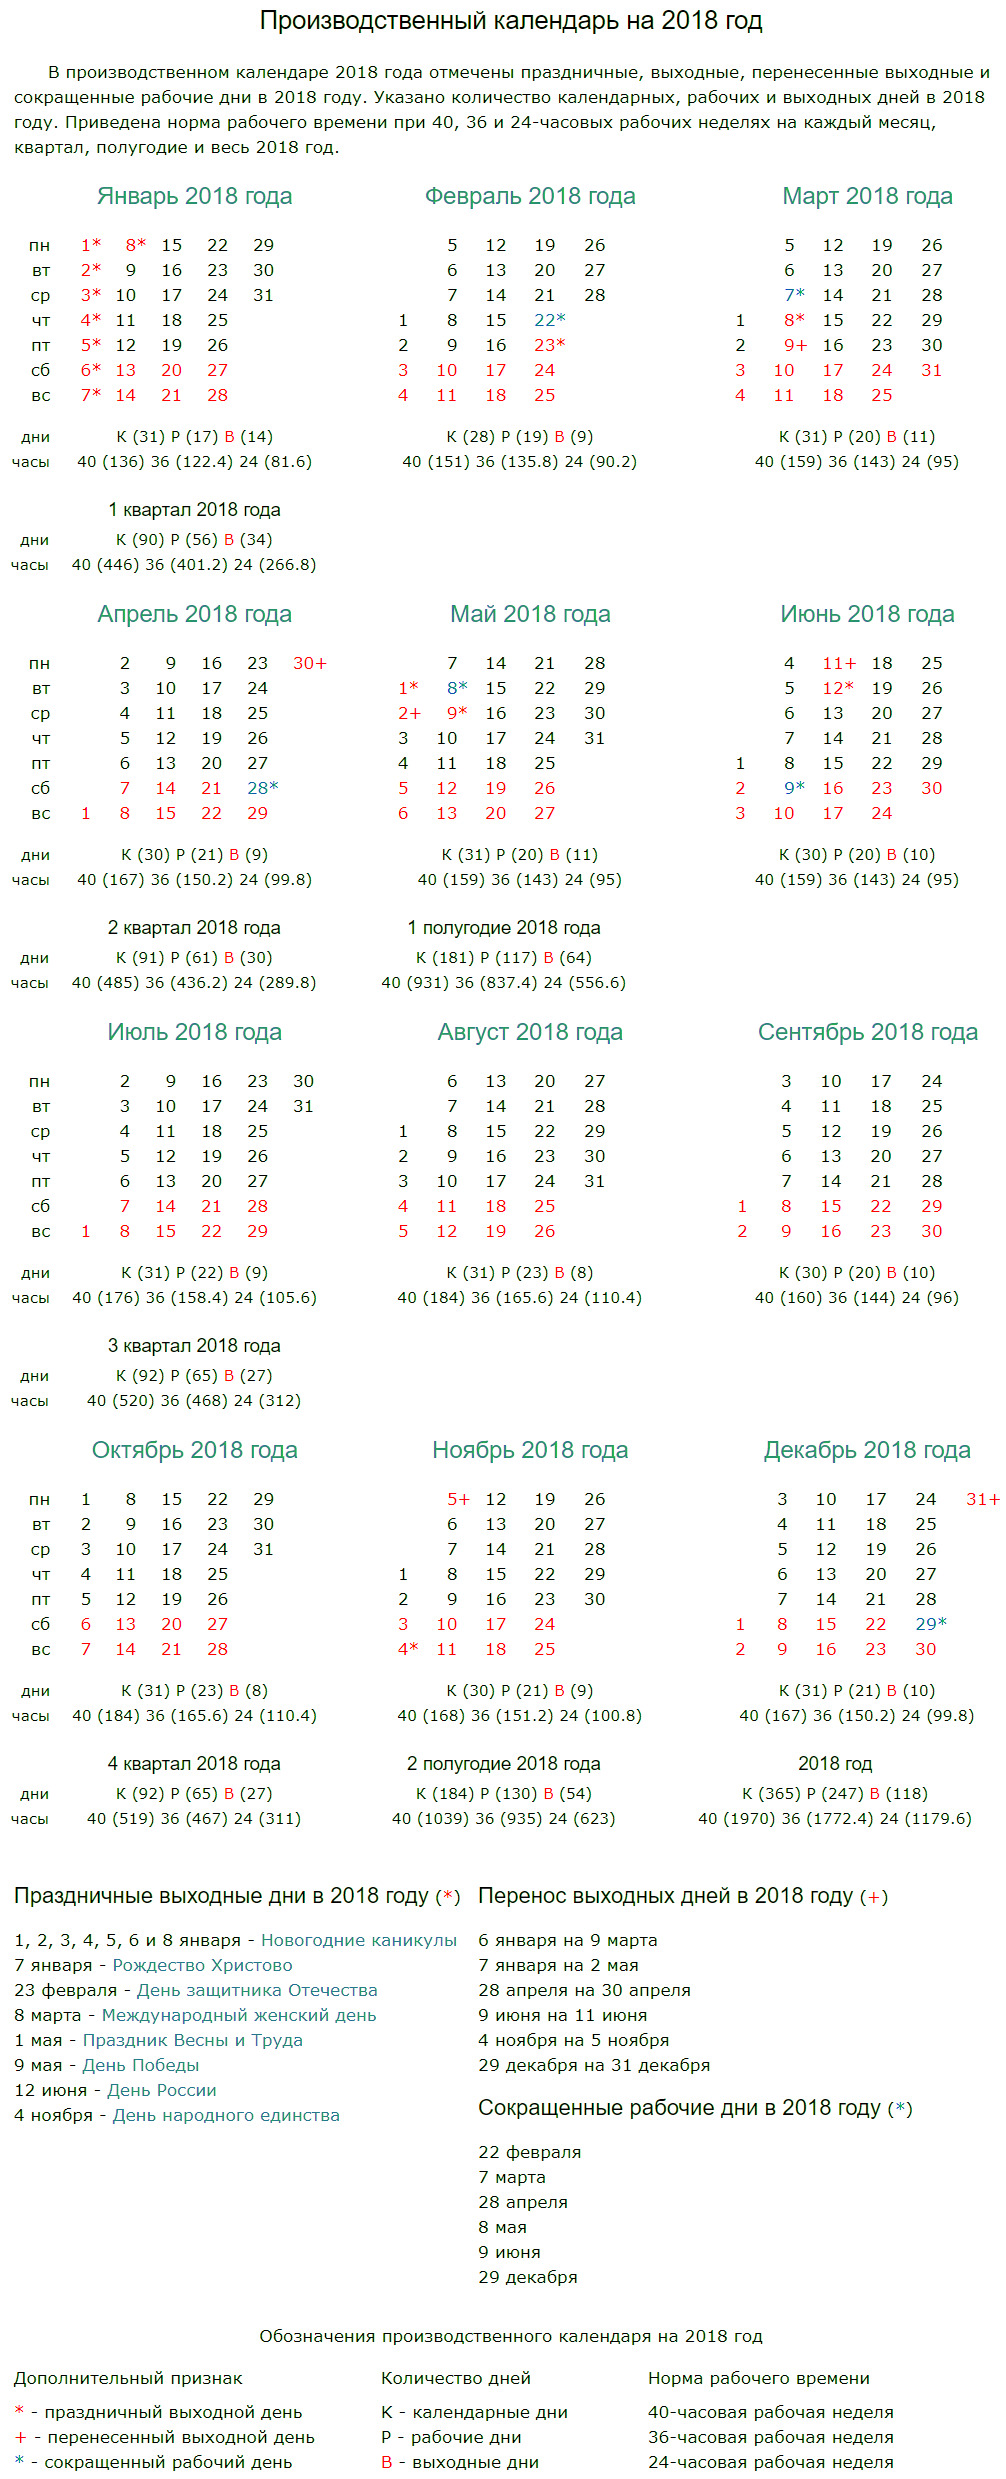 Праздничные, выходные и рабочие дни в производственном календаре на 2018 год